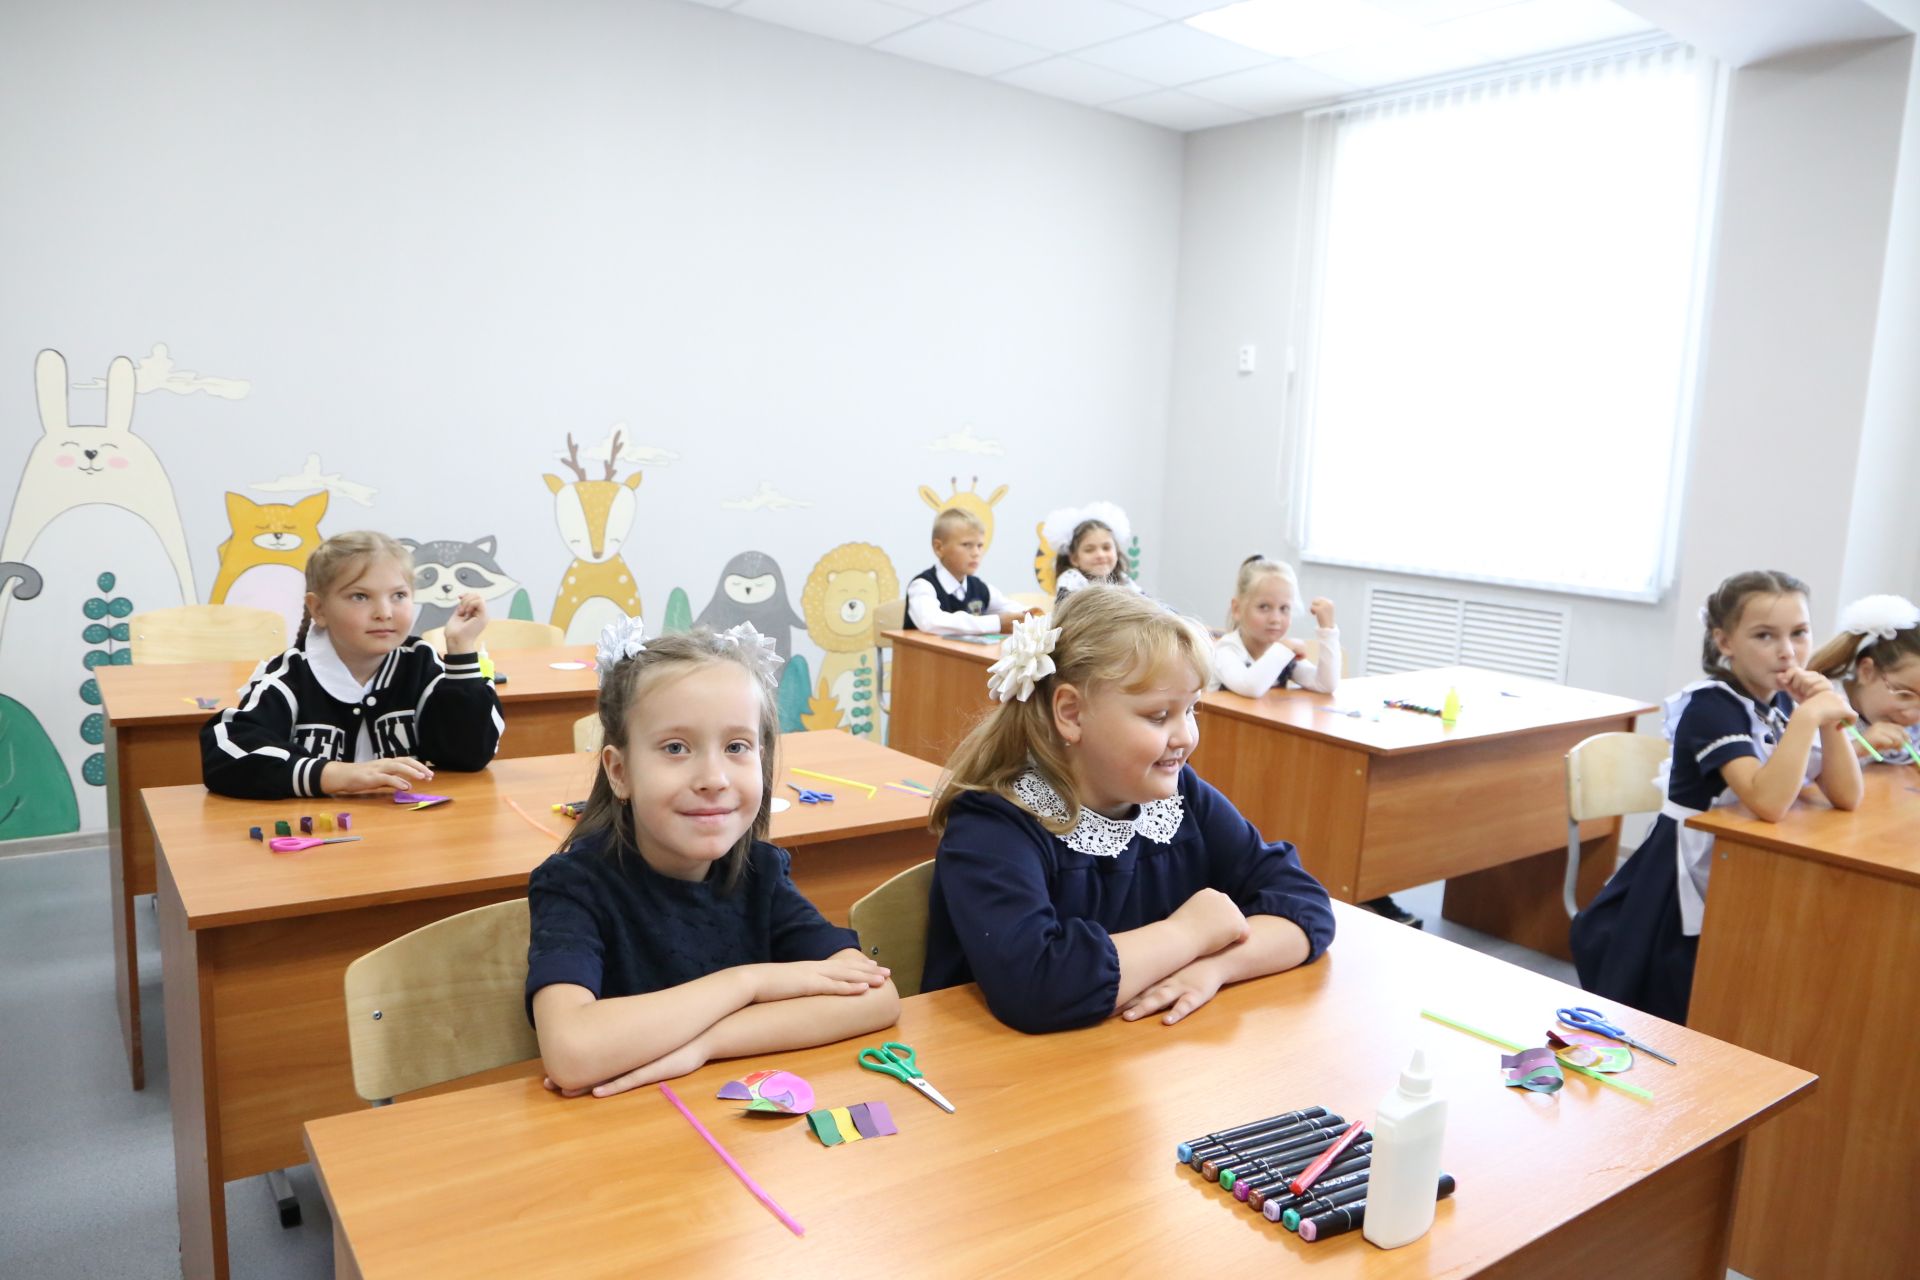 Министр лесного хозяйства Татарстана в обновленной Алексеевской детской школе искусств провел открытый урок «Разговоры о важном»